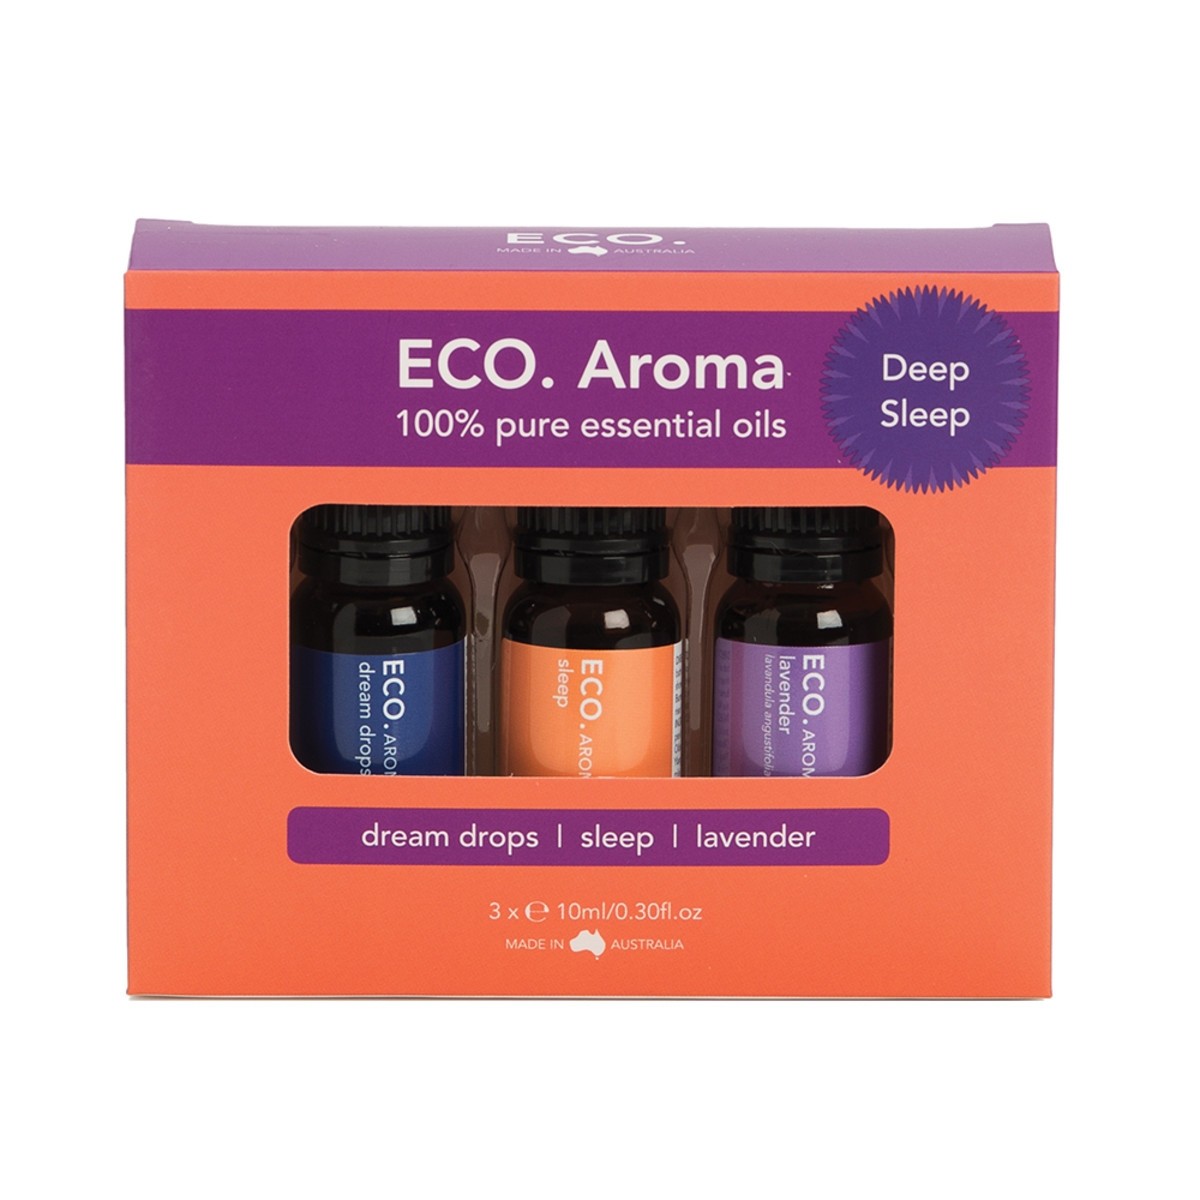 ECO Aroma Deep Sleep Trio essential oils